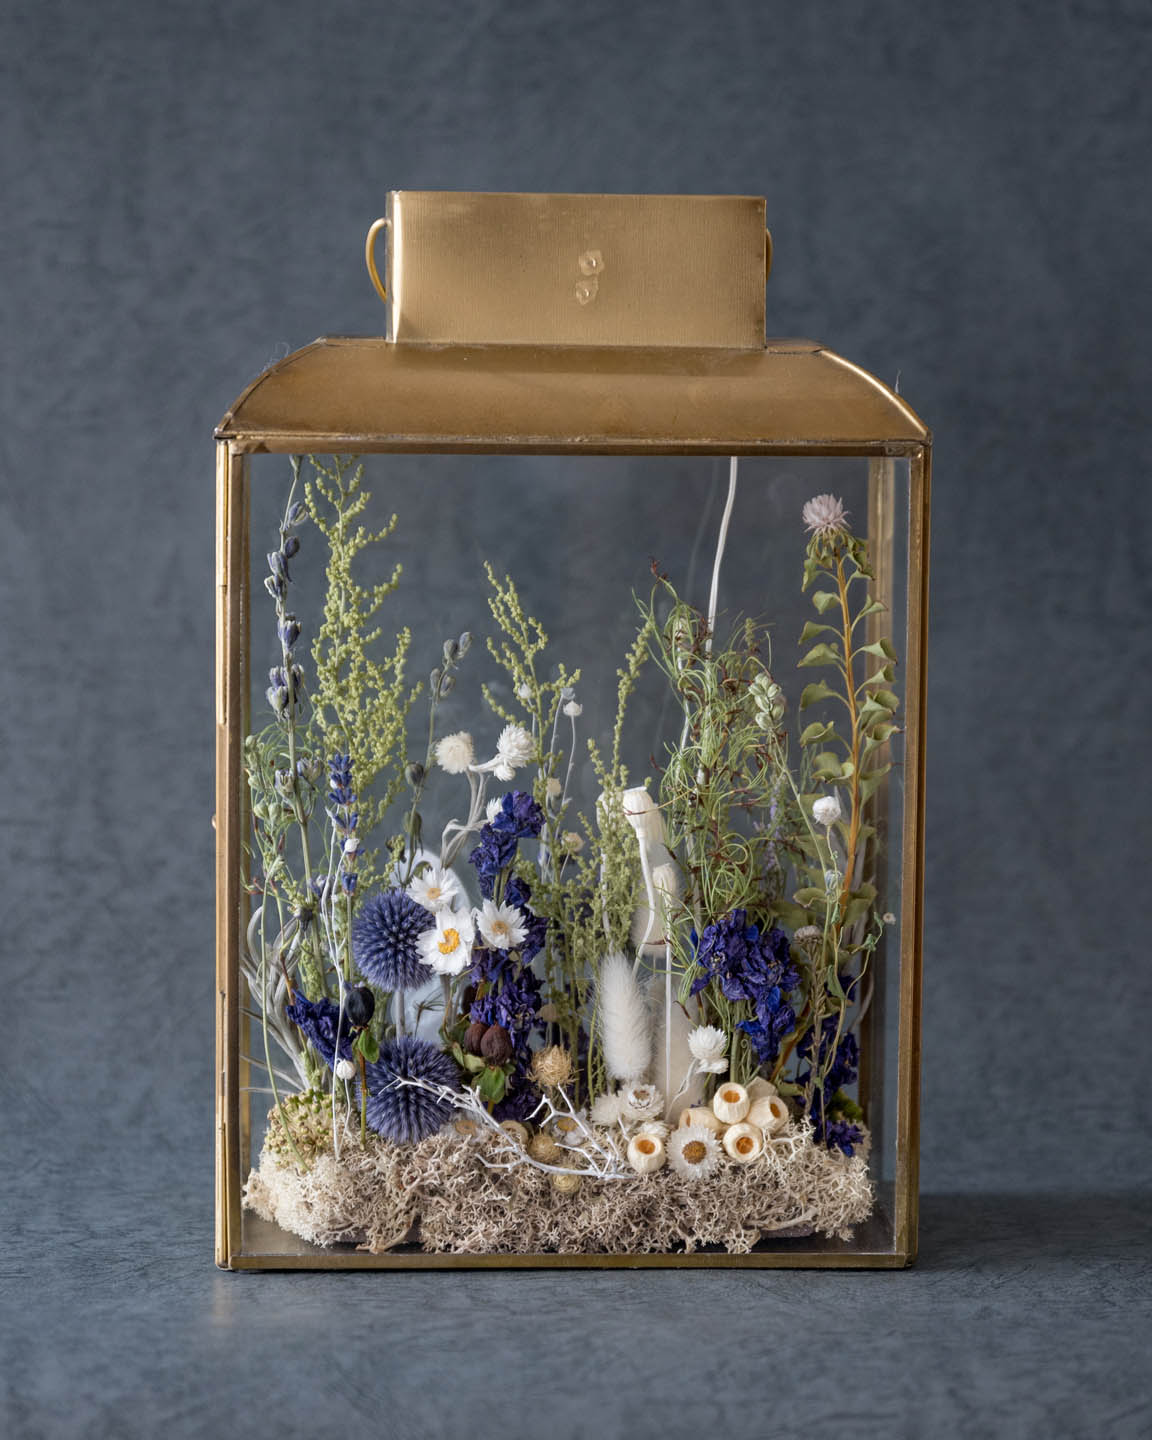 寒色系・ドライフラワーテラリウム 「ランタンフラワー」 dried flower lantern terrarium 正面